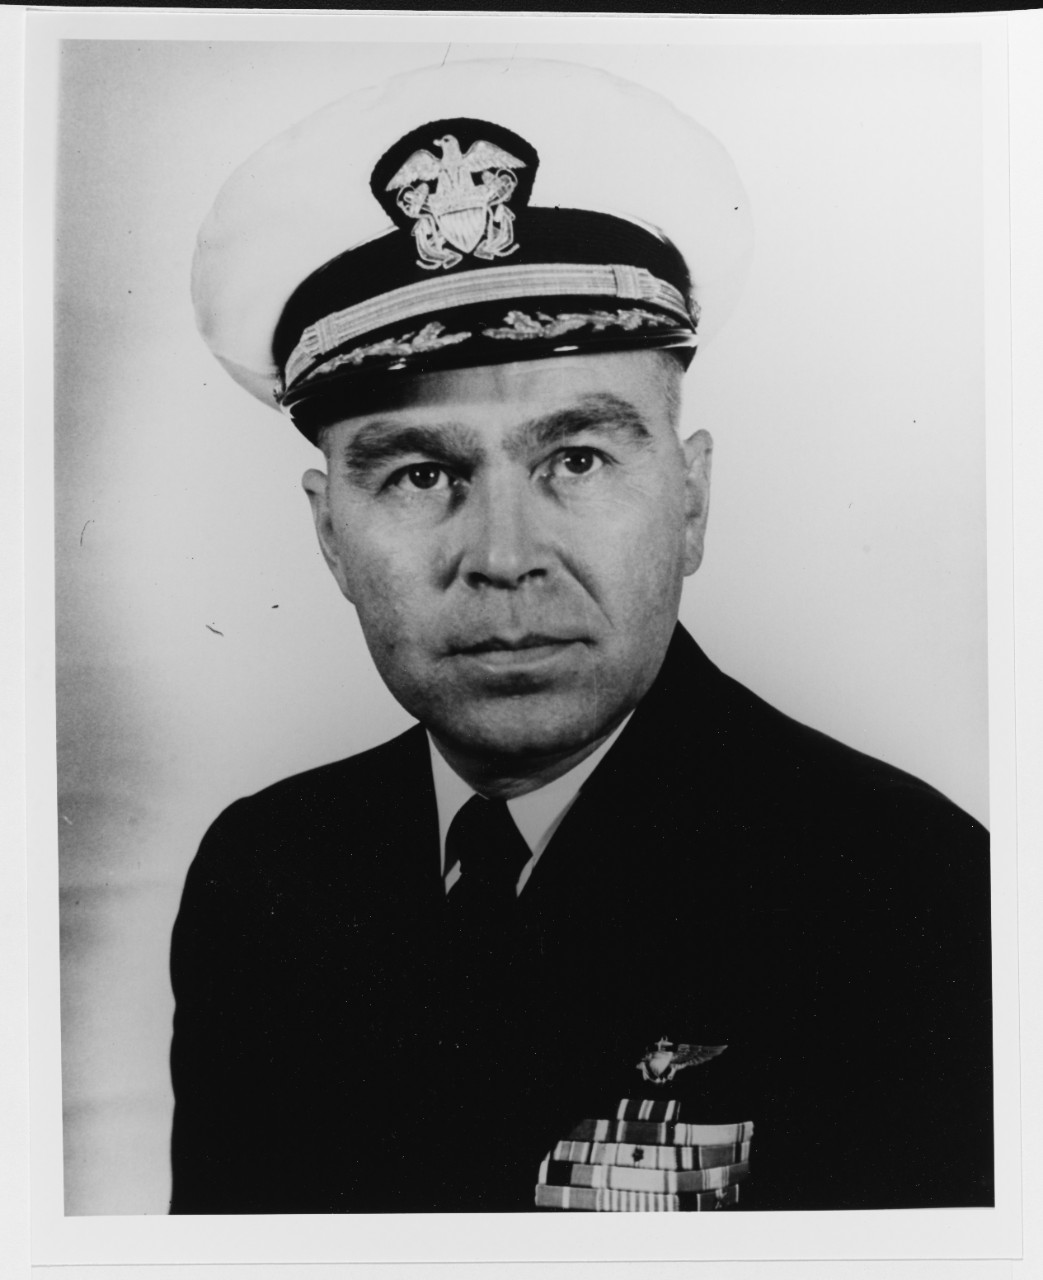 Captain Charles E. Roemer, USN